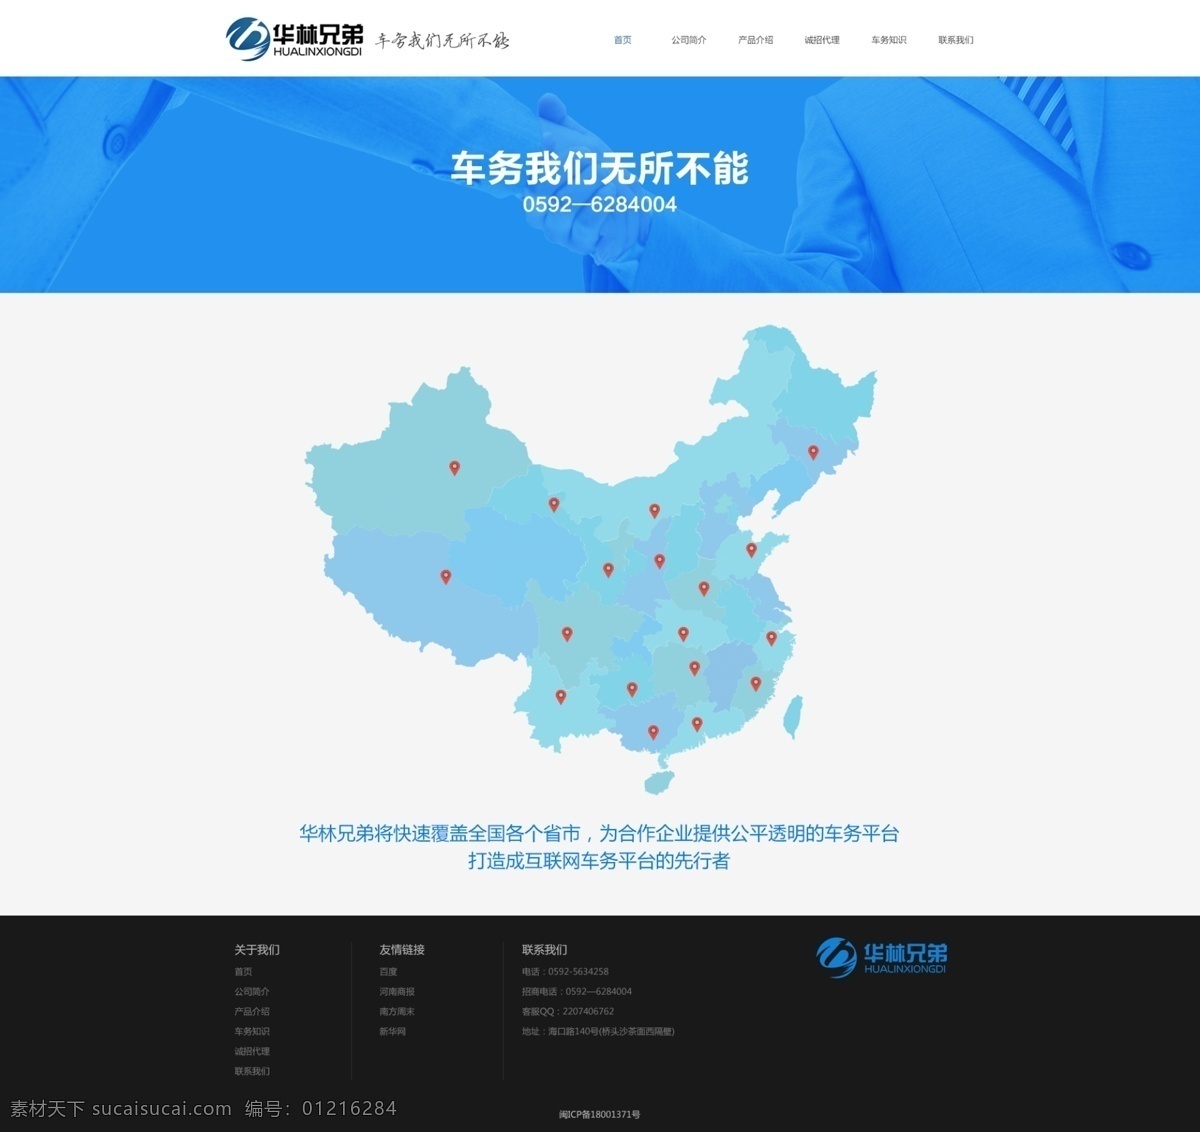 汽车美容 官 网 公司 分布图 地理 中国 汽车 车务 公司官网 坐标 ui设计 web 界面设计 中文模板